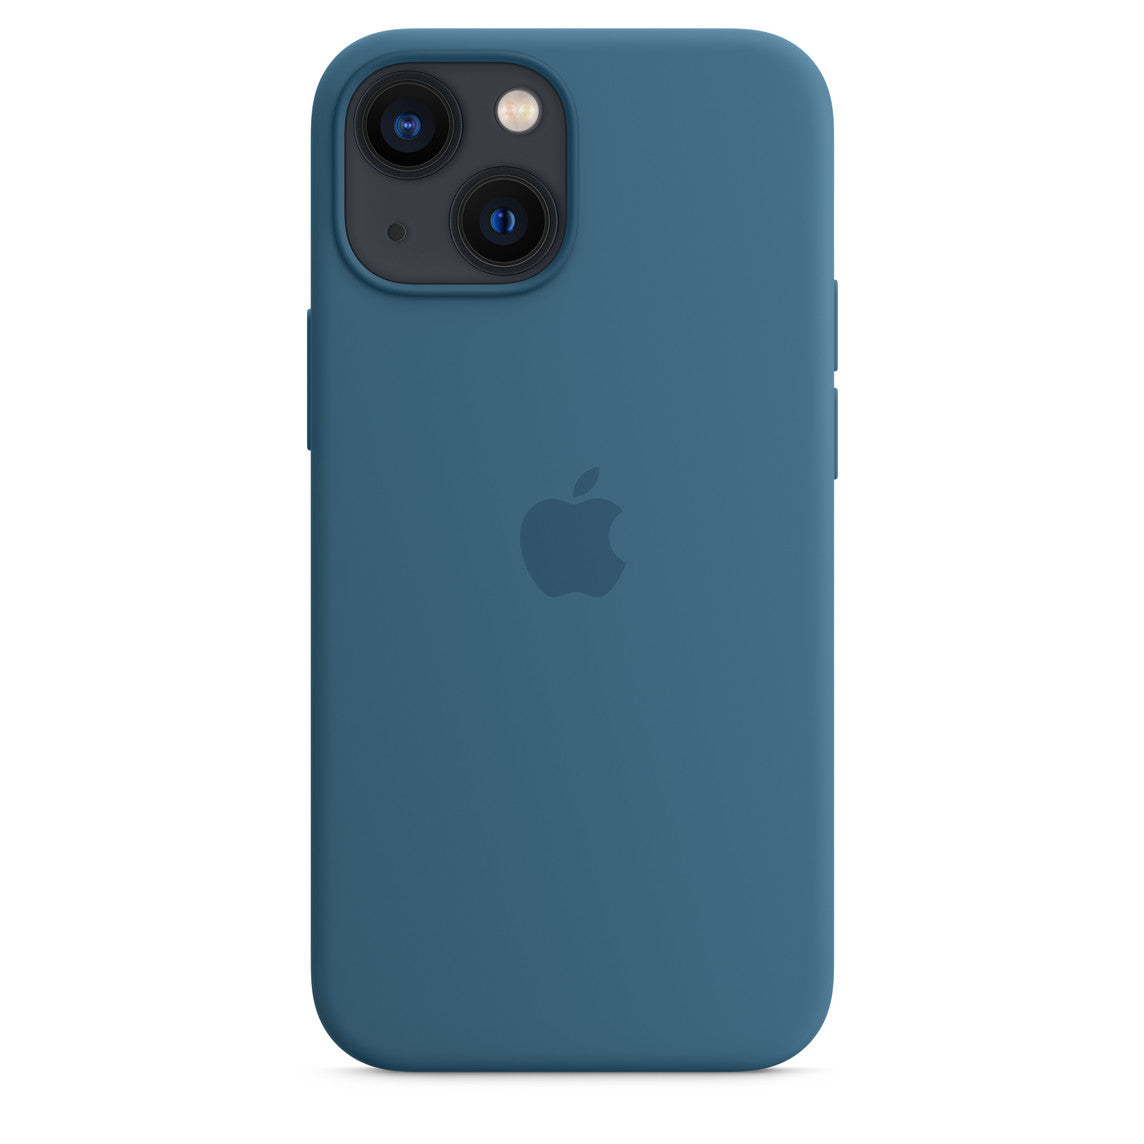 iPhone 13 Pro 1TB Sierrablau mit Apple iPhone 13 Pro Silikon Case mit Magsafe - Eisblau